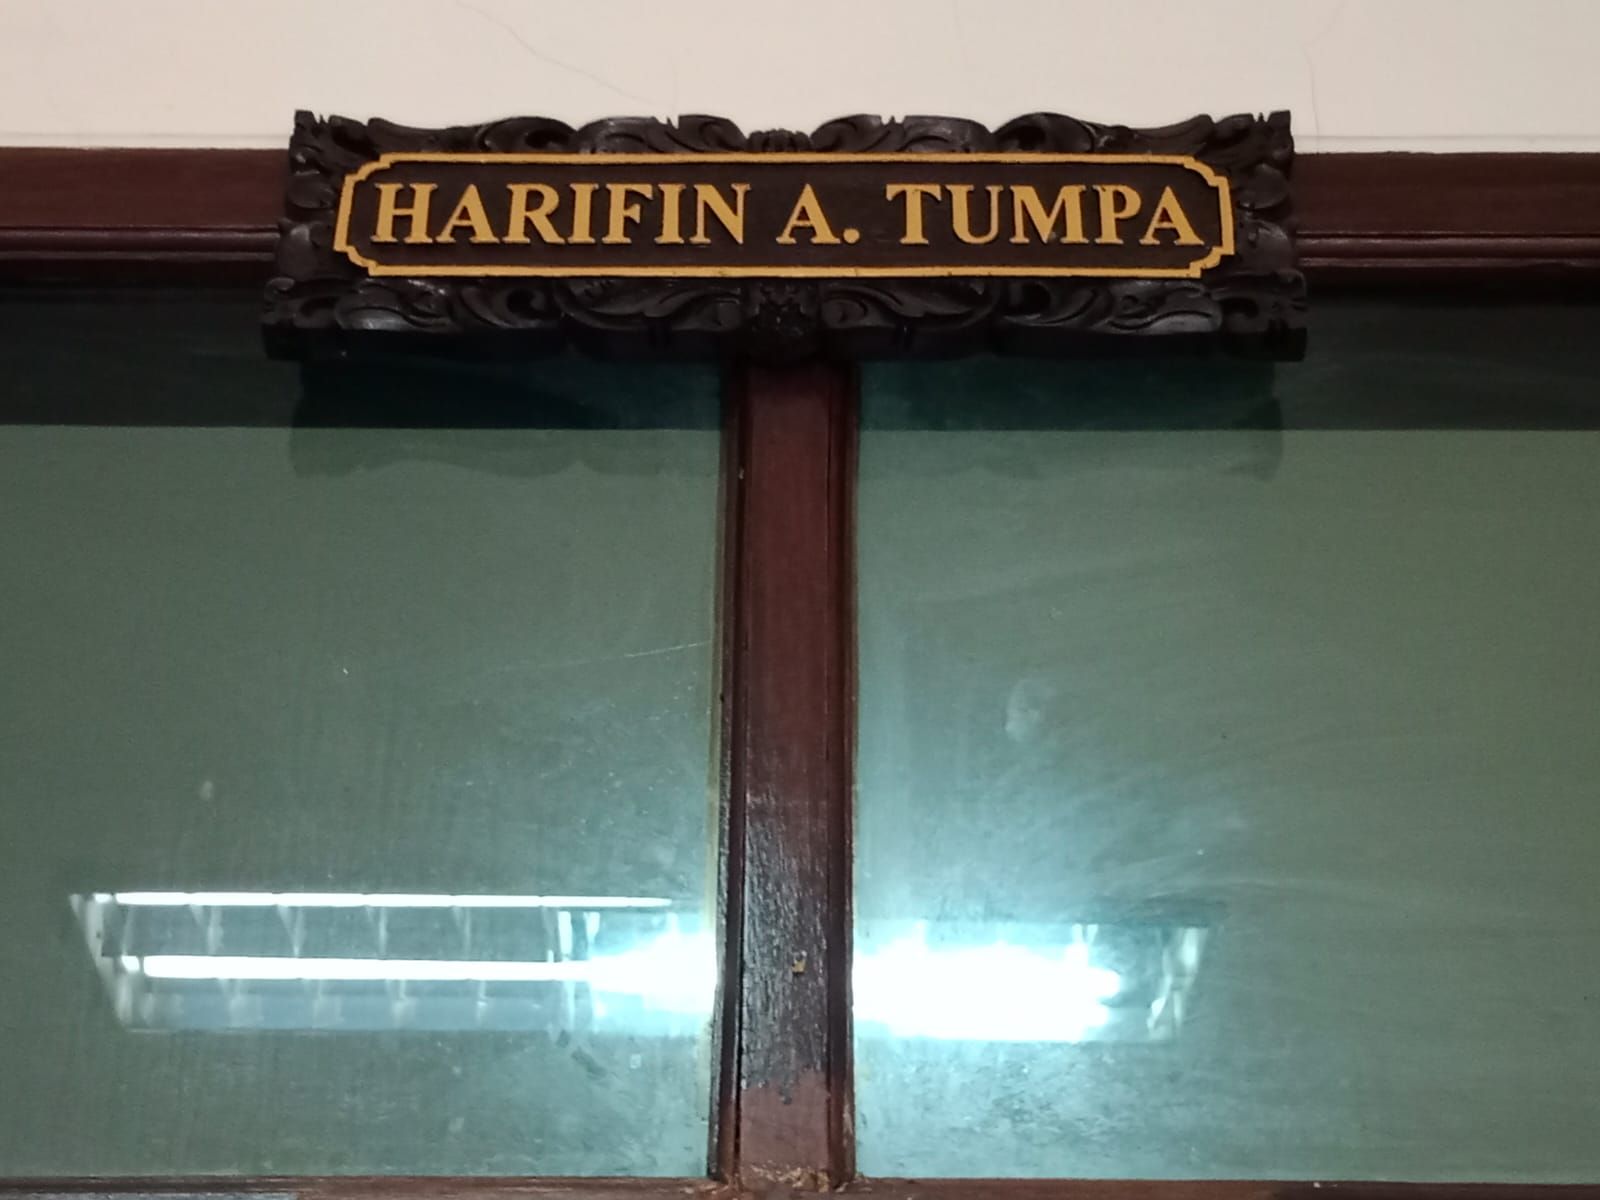 Ruang Sidang Harifin A. Tumpa tempat persidangan tipu gelap pengusaha asal Bandung